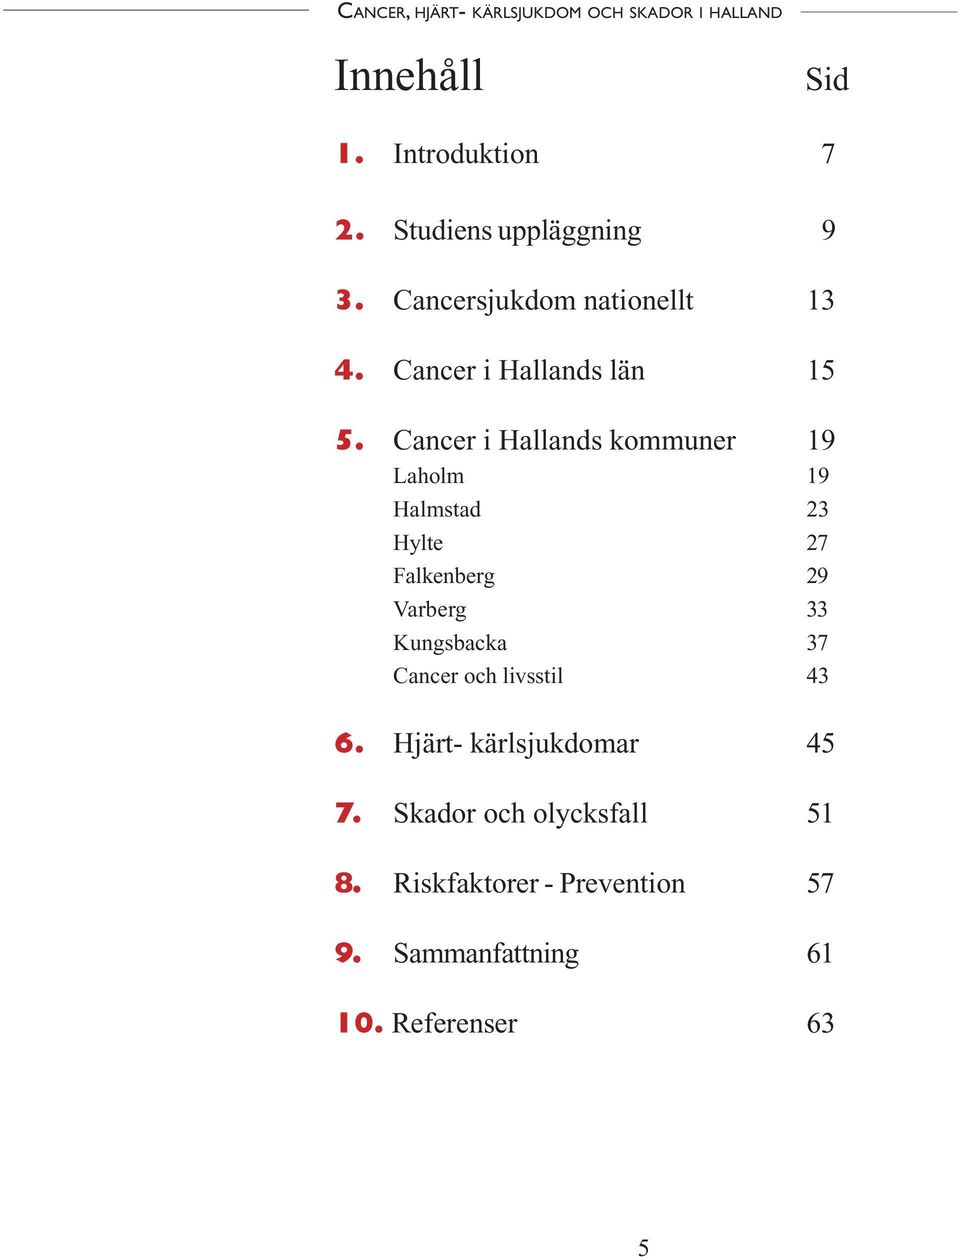 Cancer i Hallands kommuner 19 Laholm 19 Halmstad 23 Hylte 27 Falkenberg 29 Varberg 33